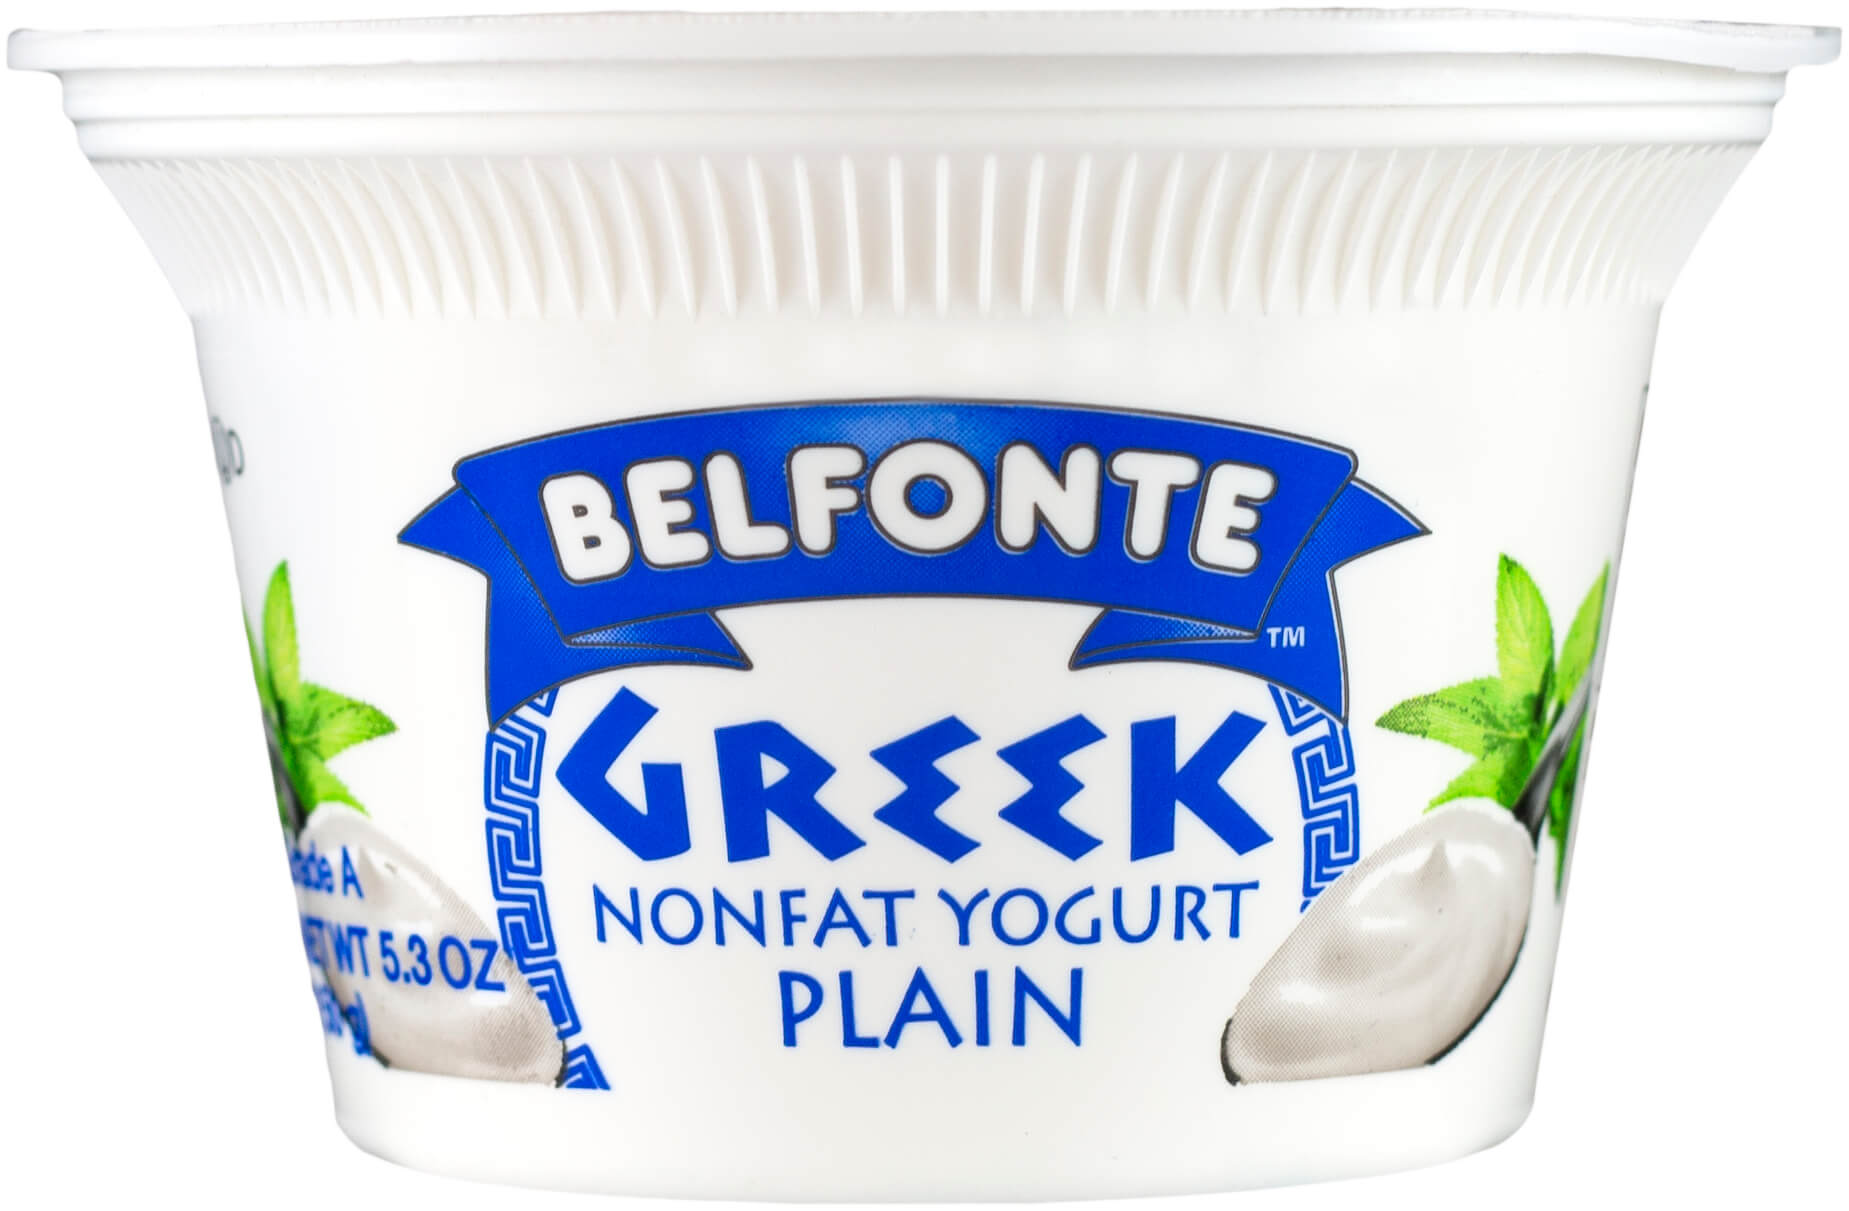 Greek yogurt. Греческий йогурт. Белорусский йогурт. Греческий йогурт для салата. Белорусский йогурт название.